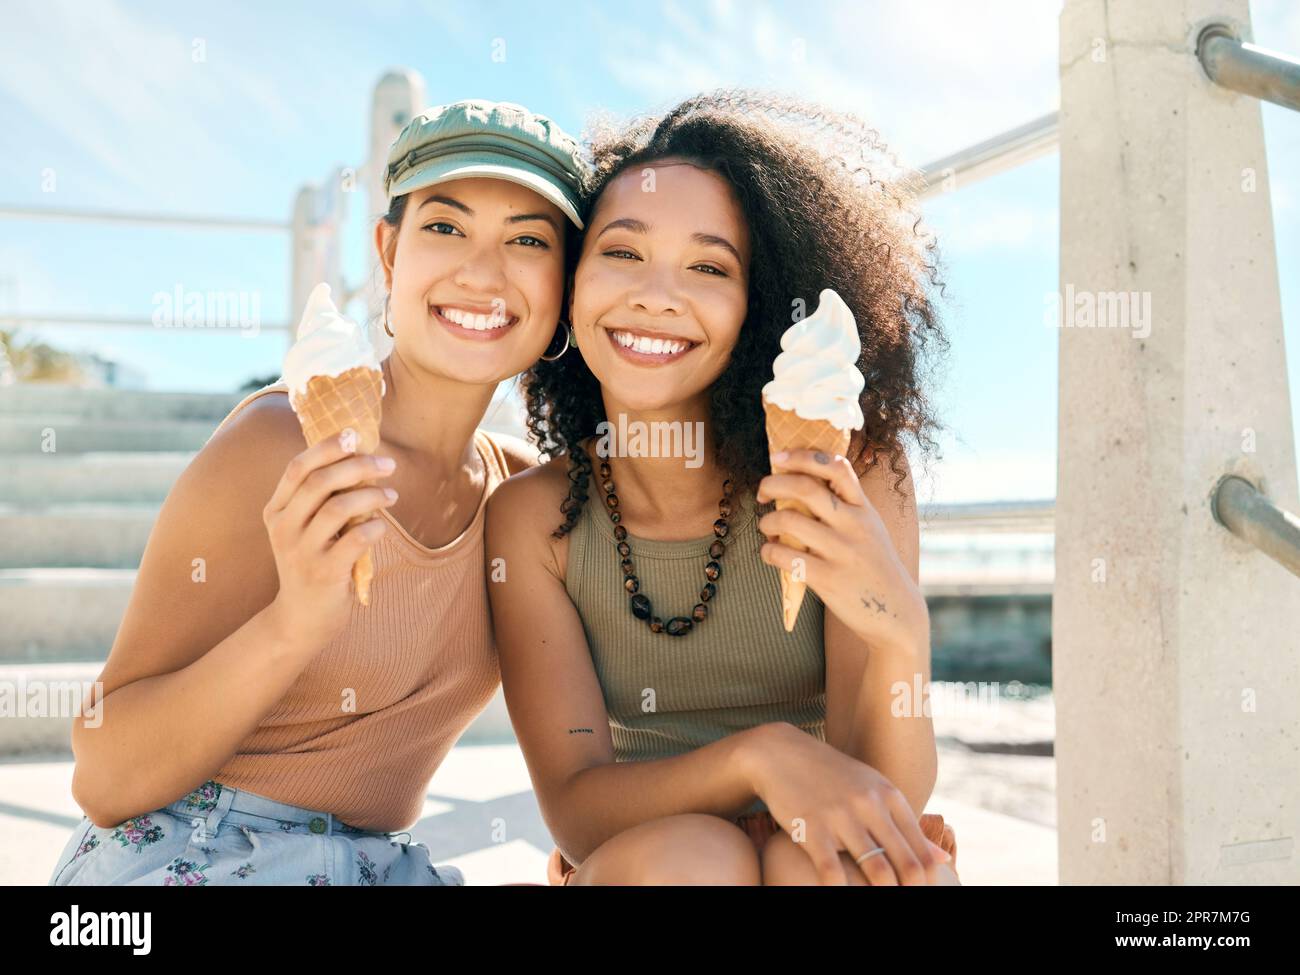 C'est l'été. Portrait court de deux jeunes filles attrayantes appréciant des glaces sur la plage. Banque D'Images